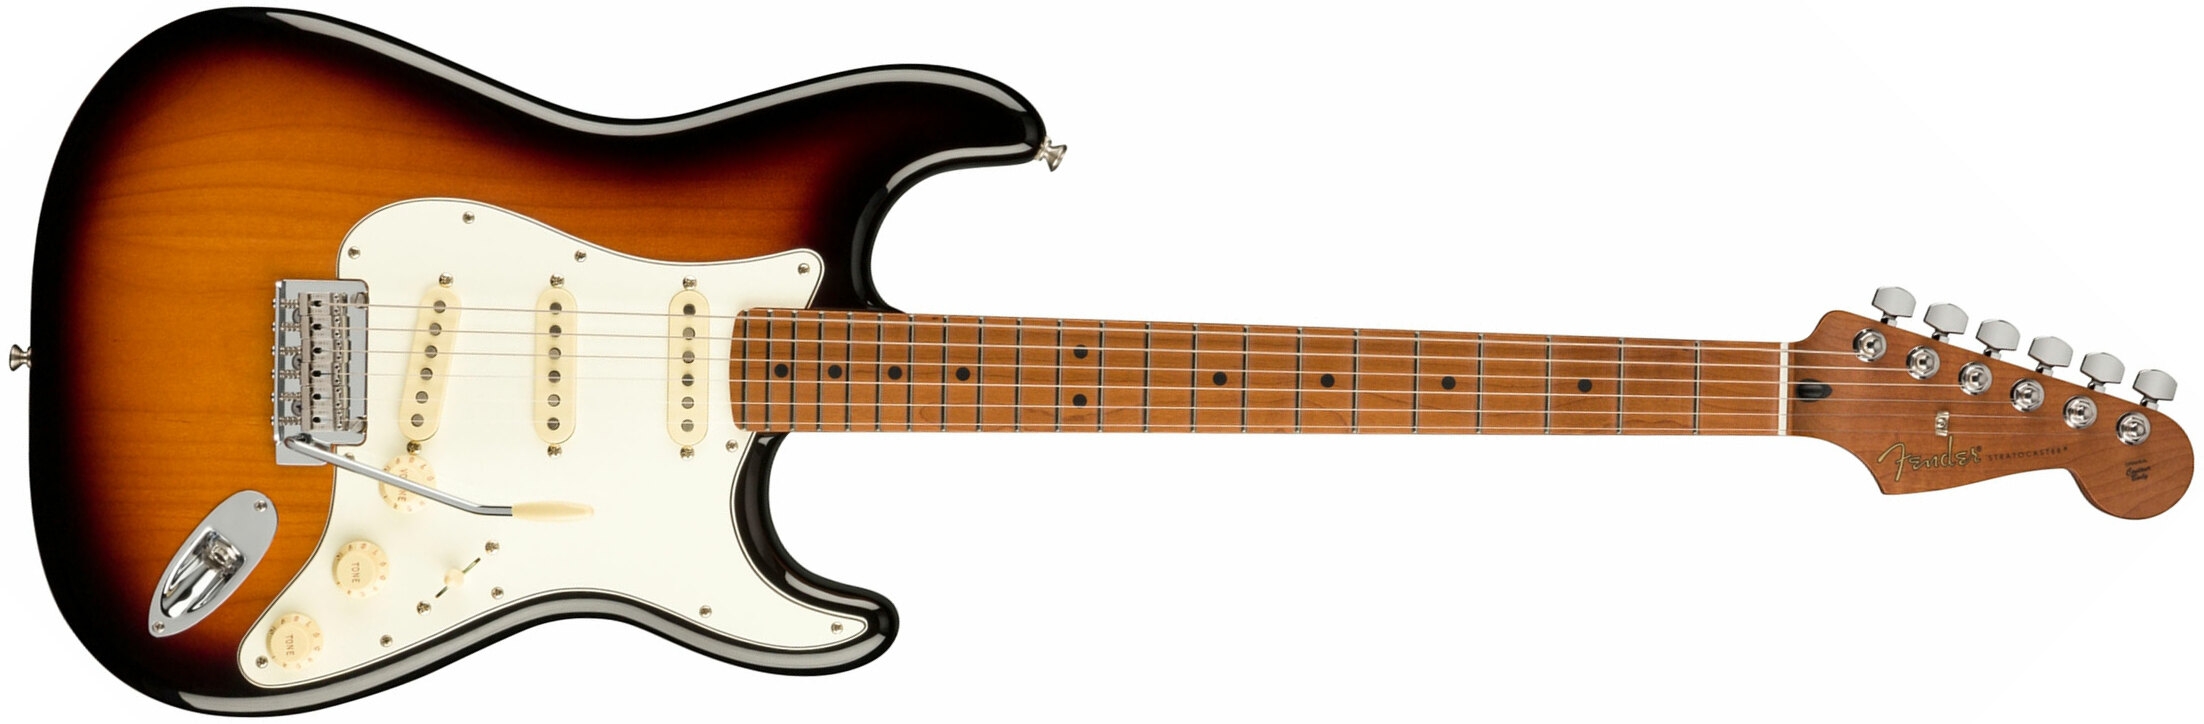 Fender Strat Player 1959 Texas Special Ltd Mex 3s Mn - 2-color Sunburst - Elektrische gitaar in Str-vorm - Main picture